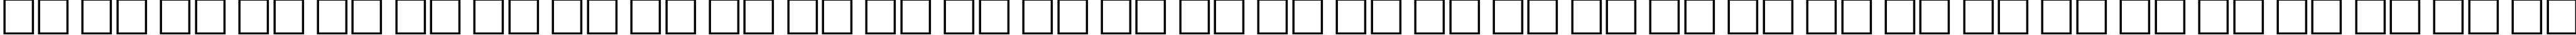 Пример написания русского алфавита шрифтом AnnaCTT Bold